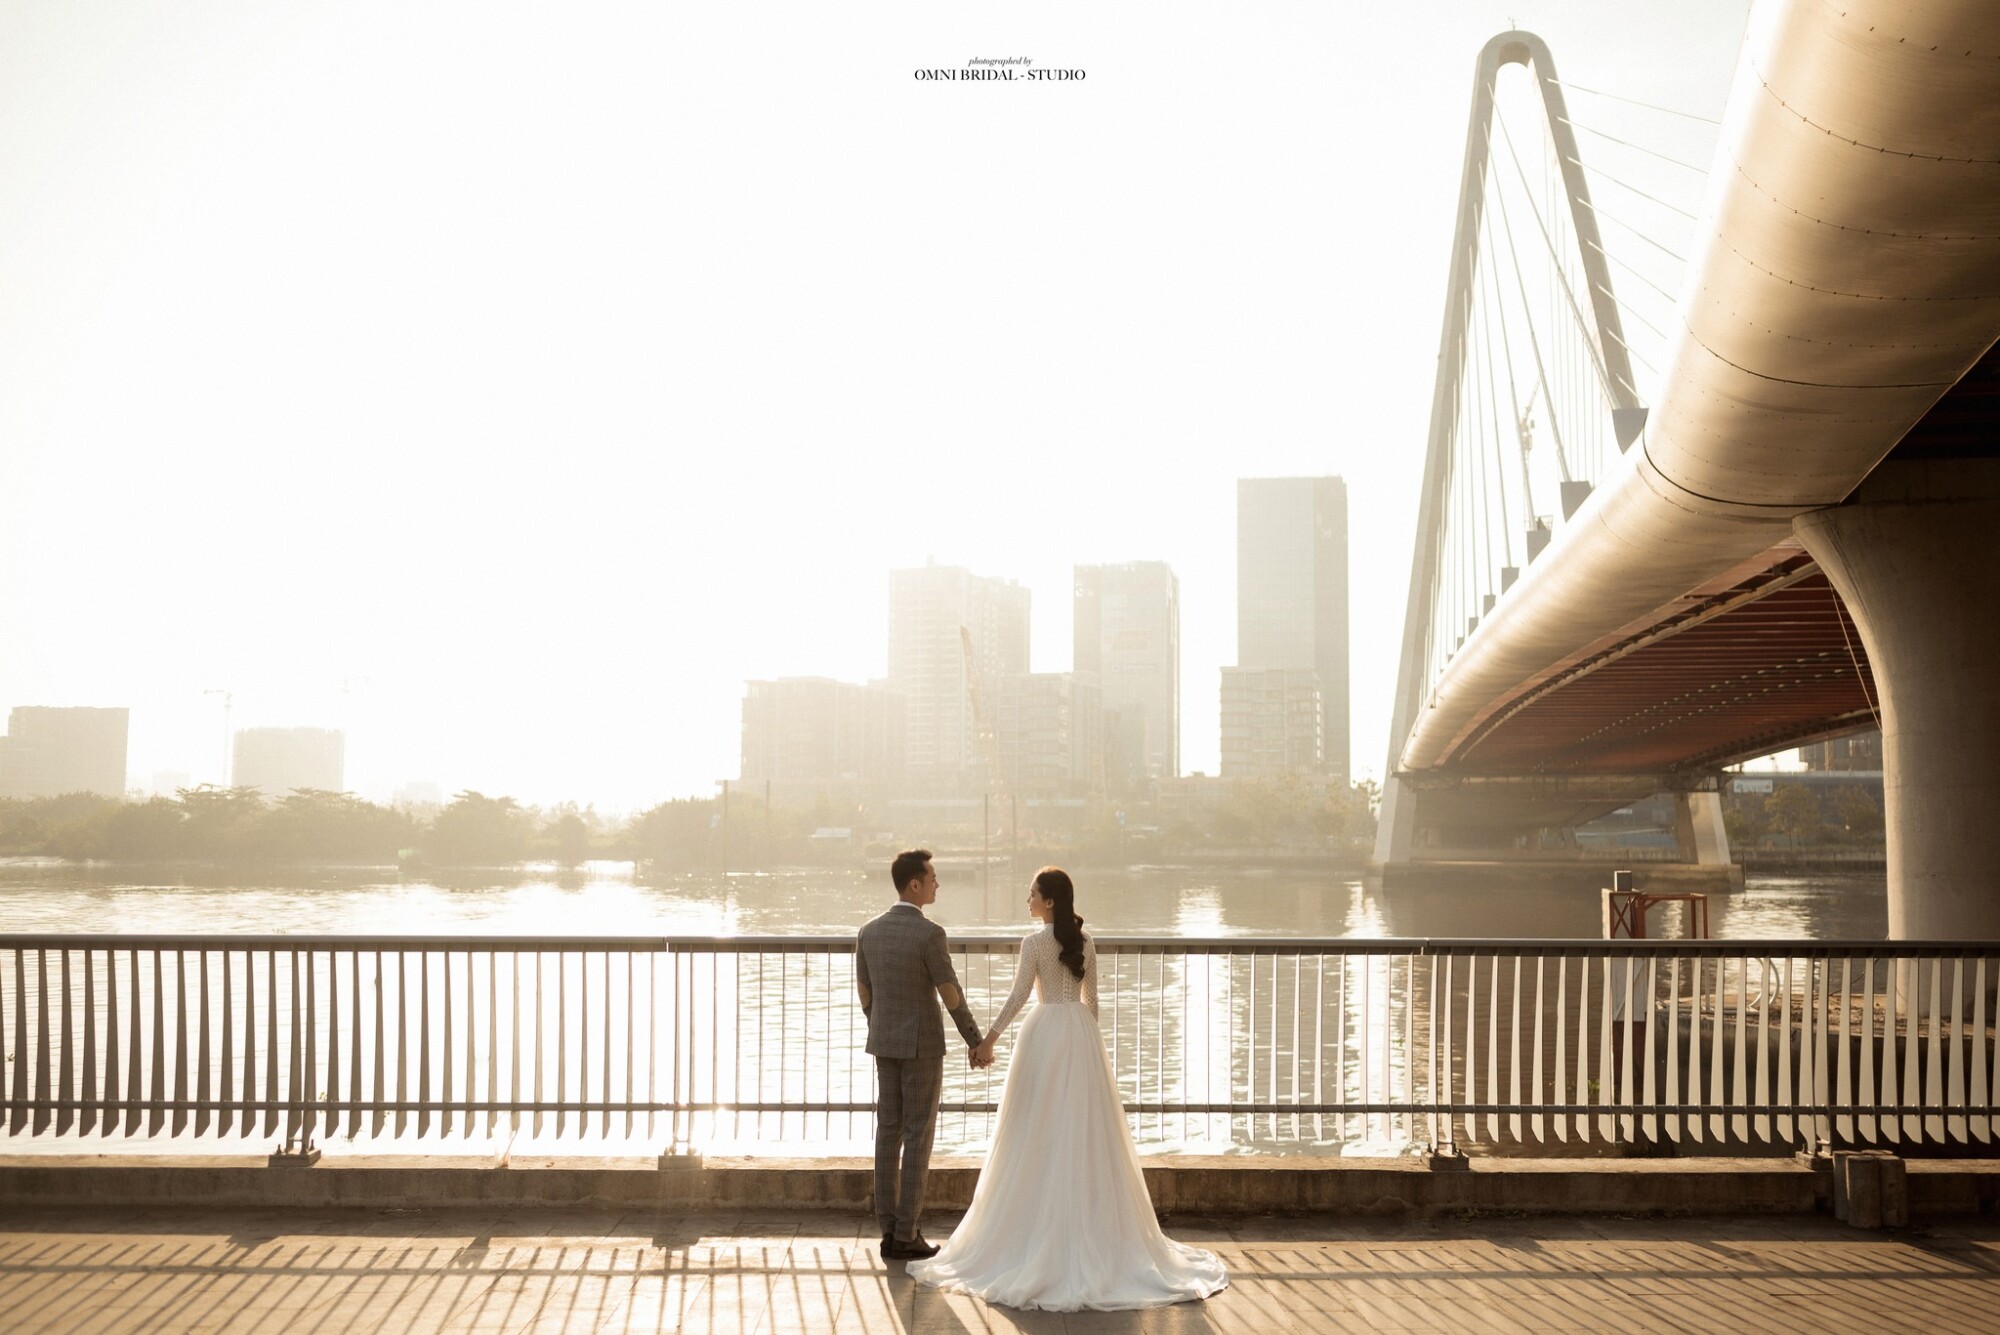 Chụp ảnh cưới bên cây cầu Ba Son nổi tiếng